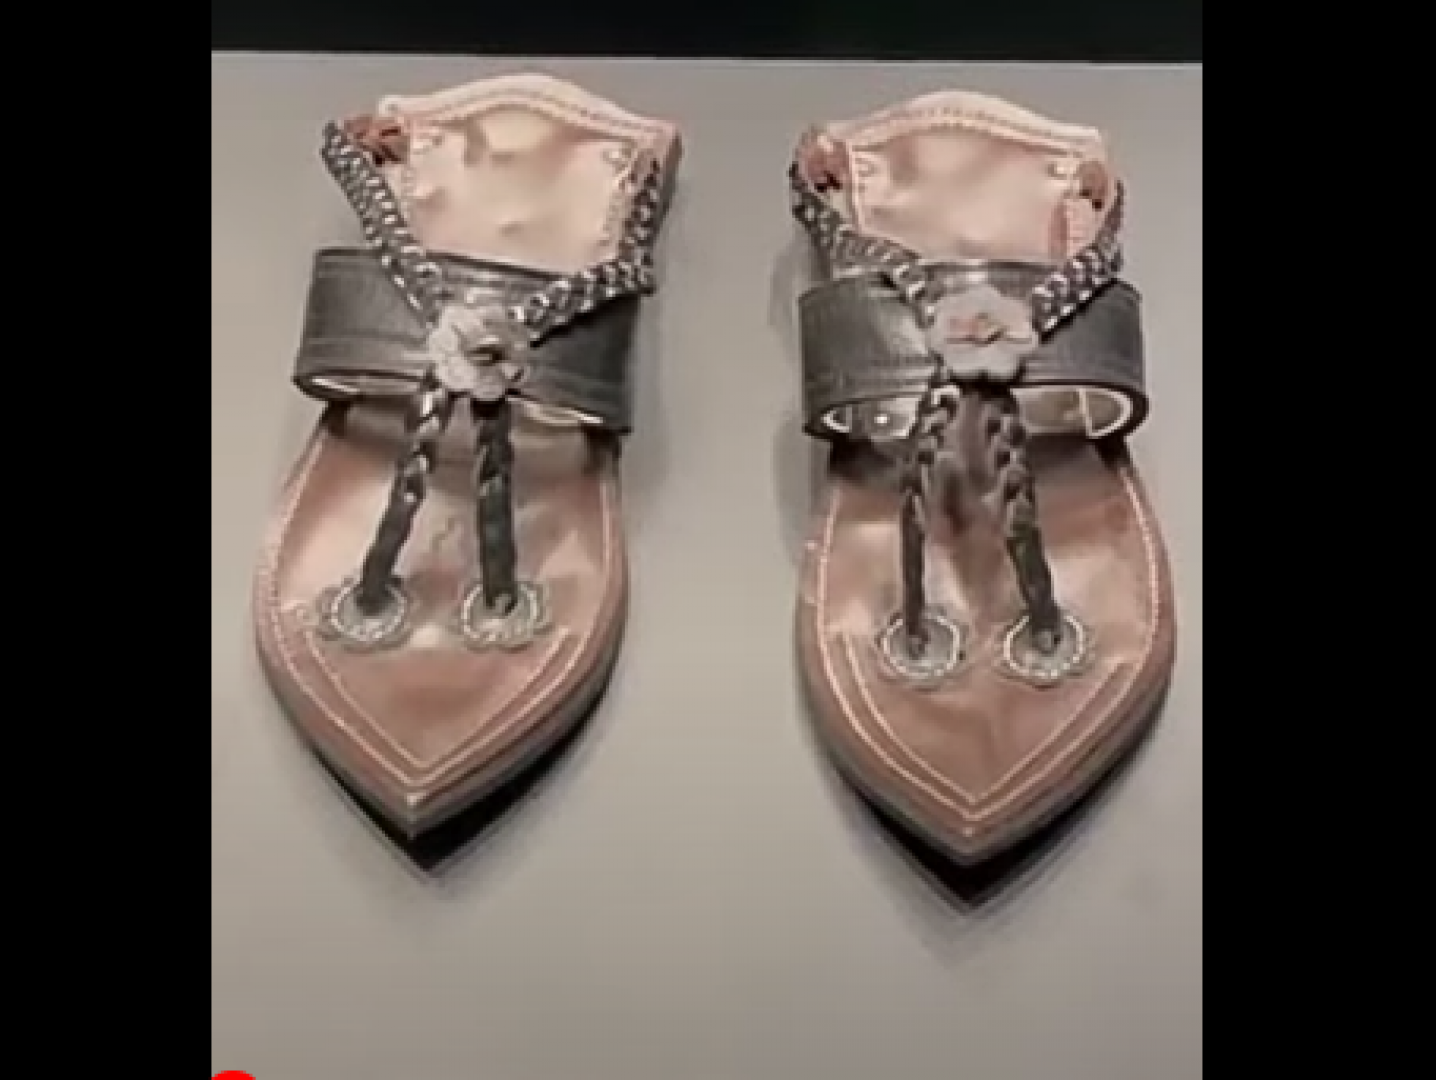 بالفيديو مركز إثراء في السعودية يعرض نسخة من حذاء النبي محمد (ص )